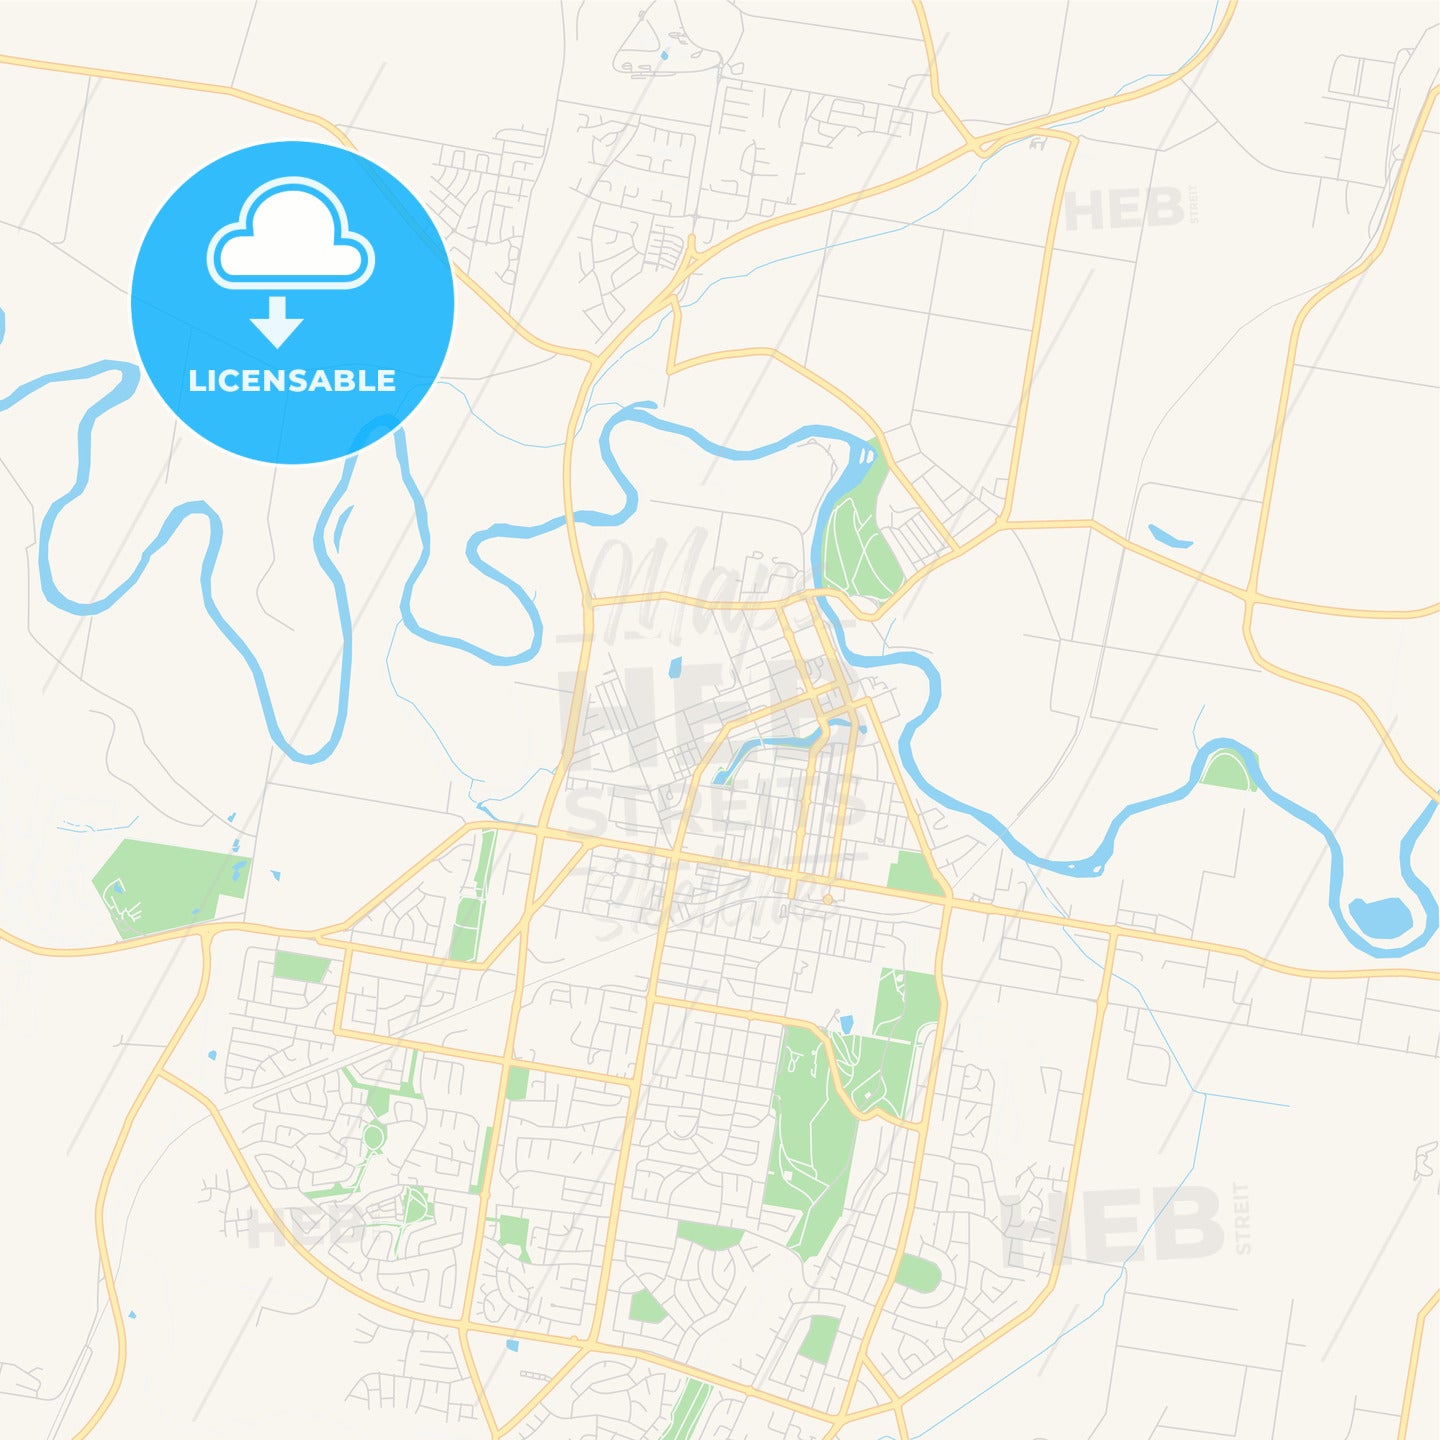 Printable street map of Wagga Wagga, Australia